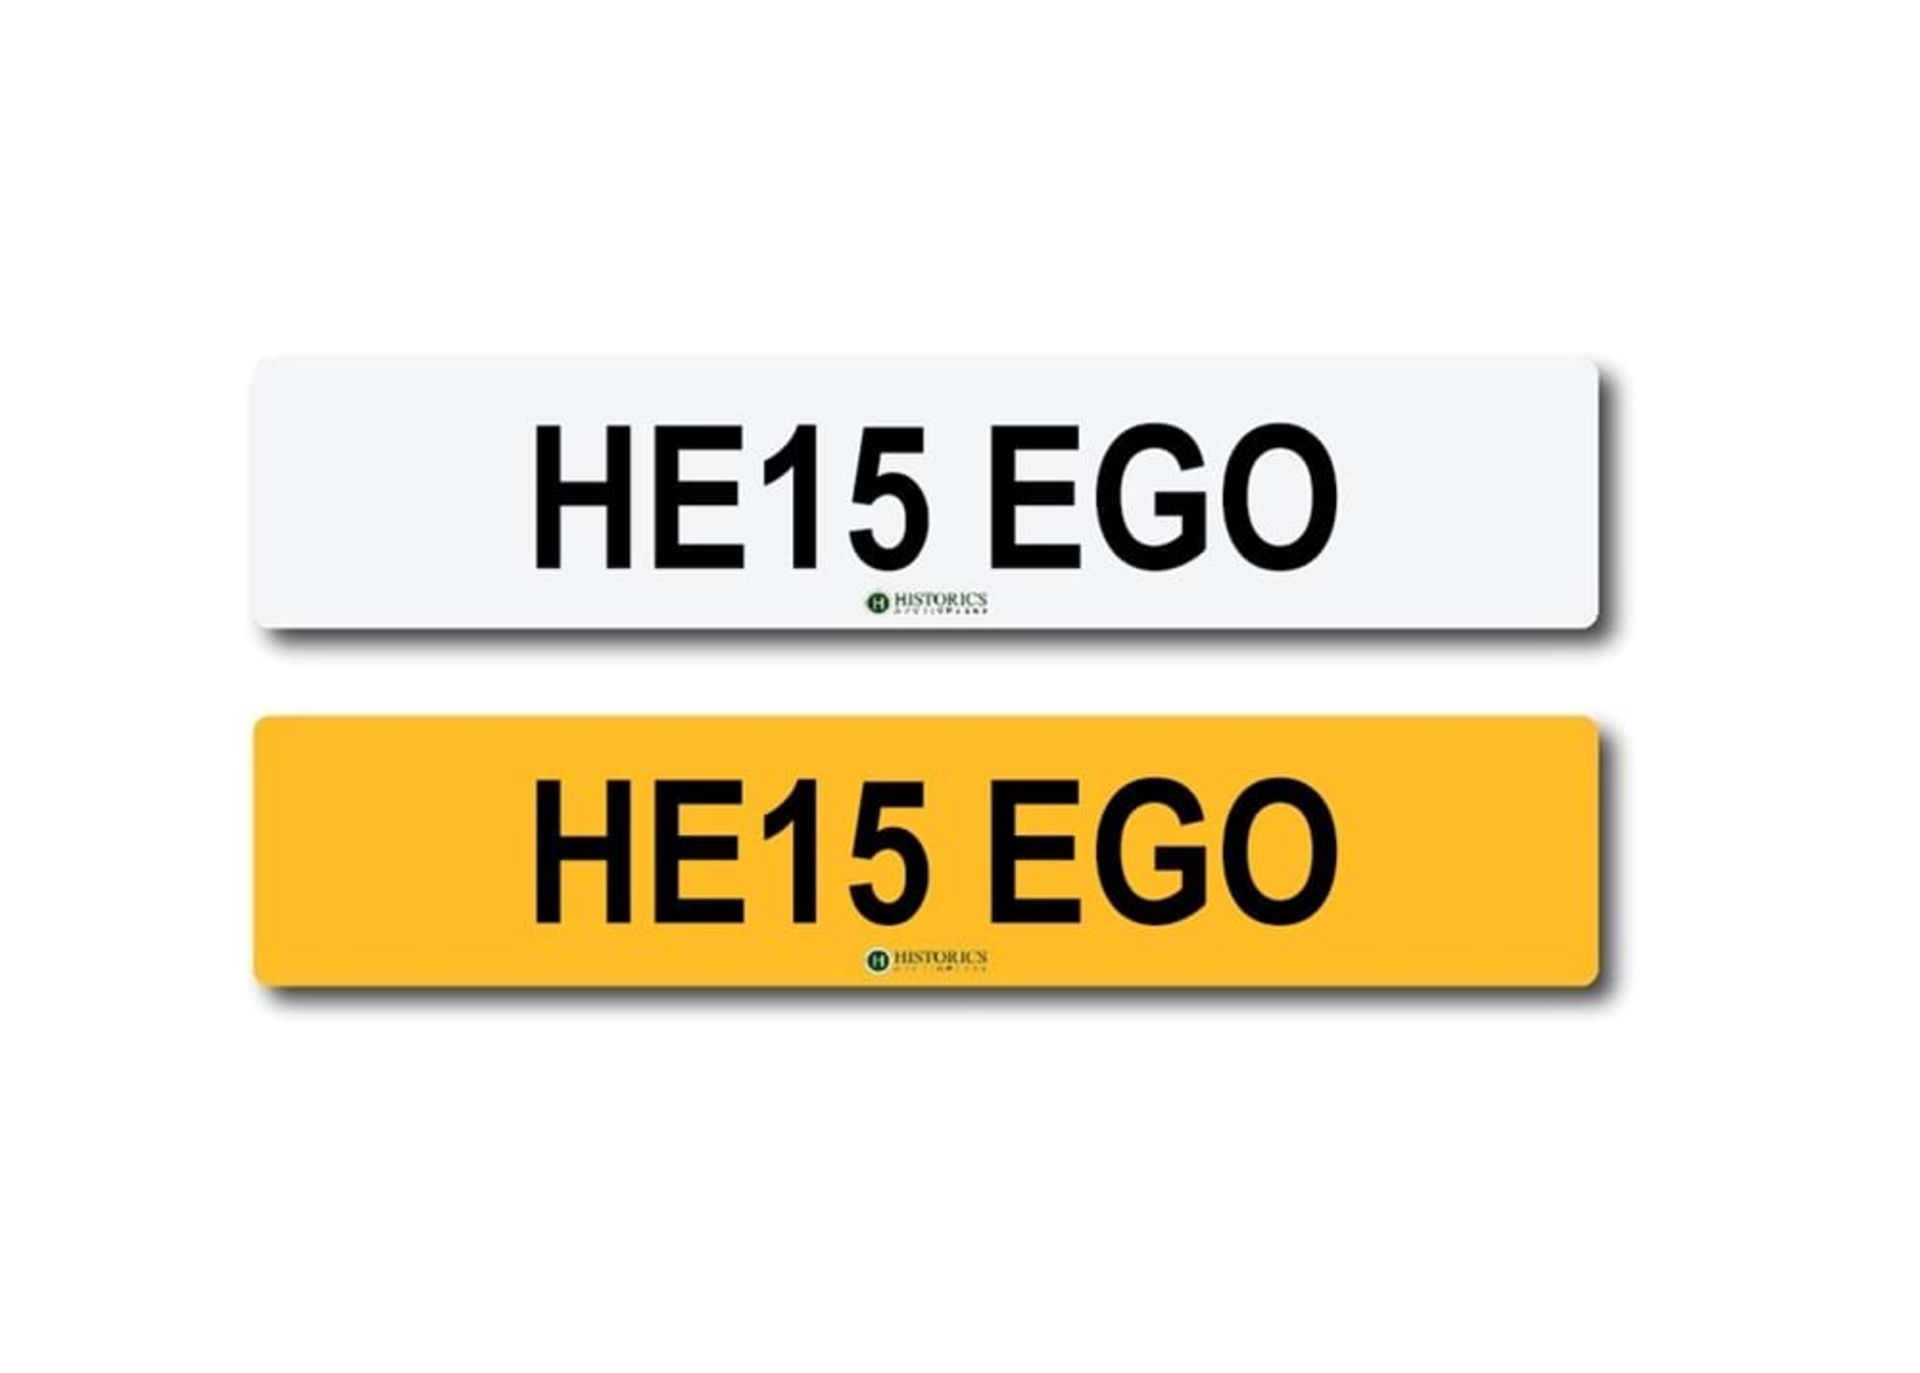 Registration HE15 EGO